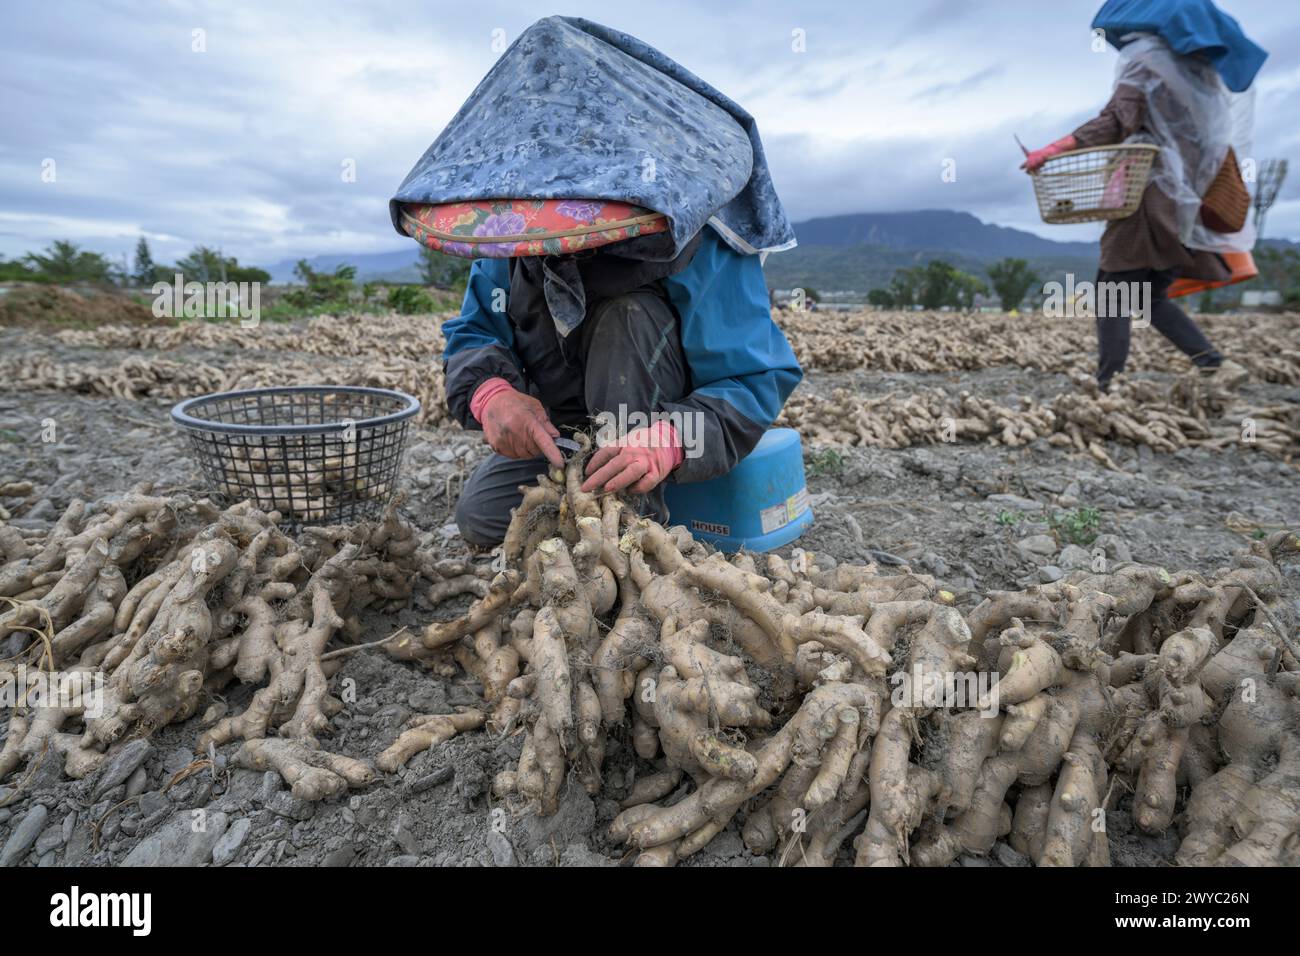 Ein Bauer in einem bunten Hut erntet Ingwer auf einem Feld mit Bergkulisse Stockfoto